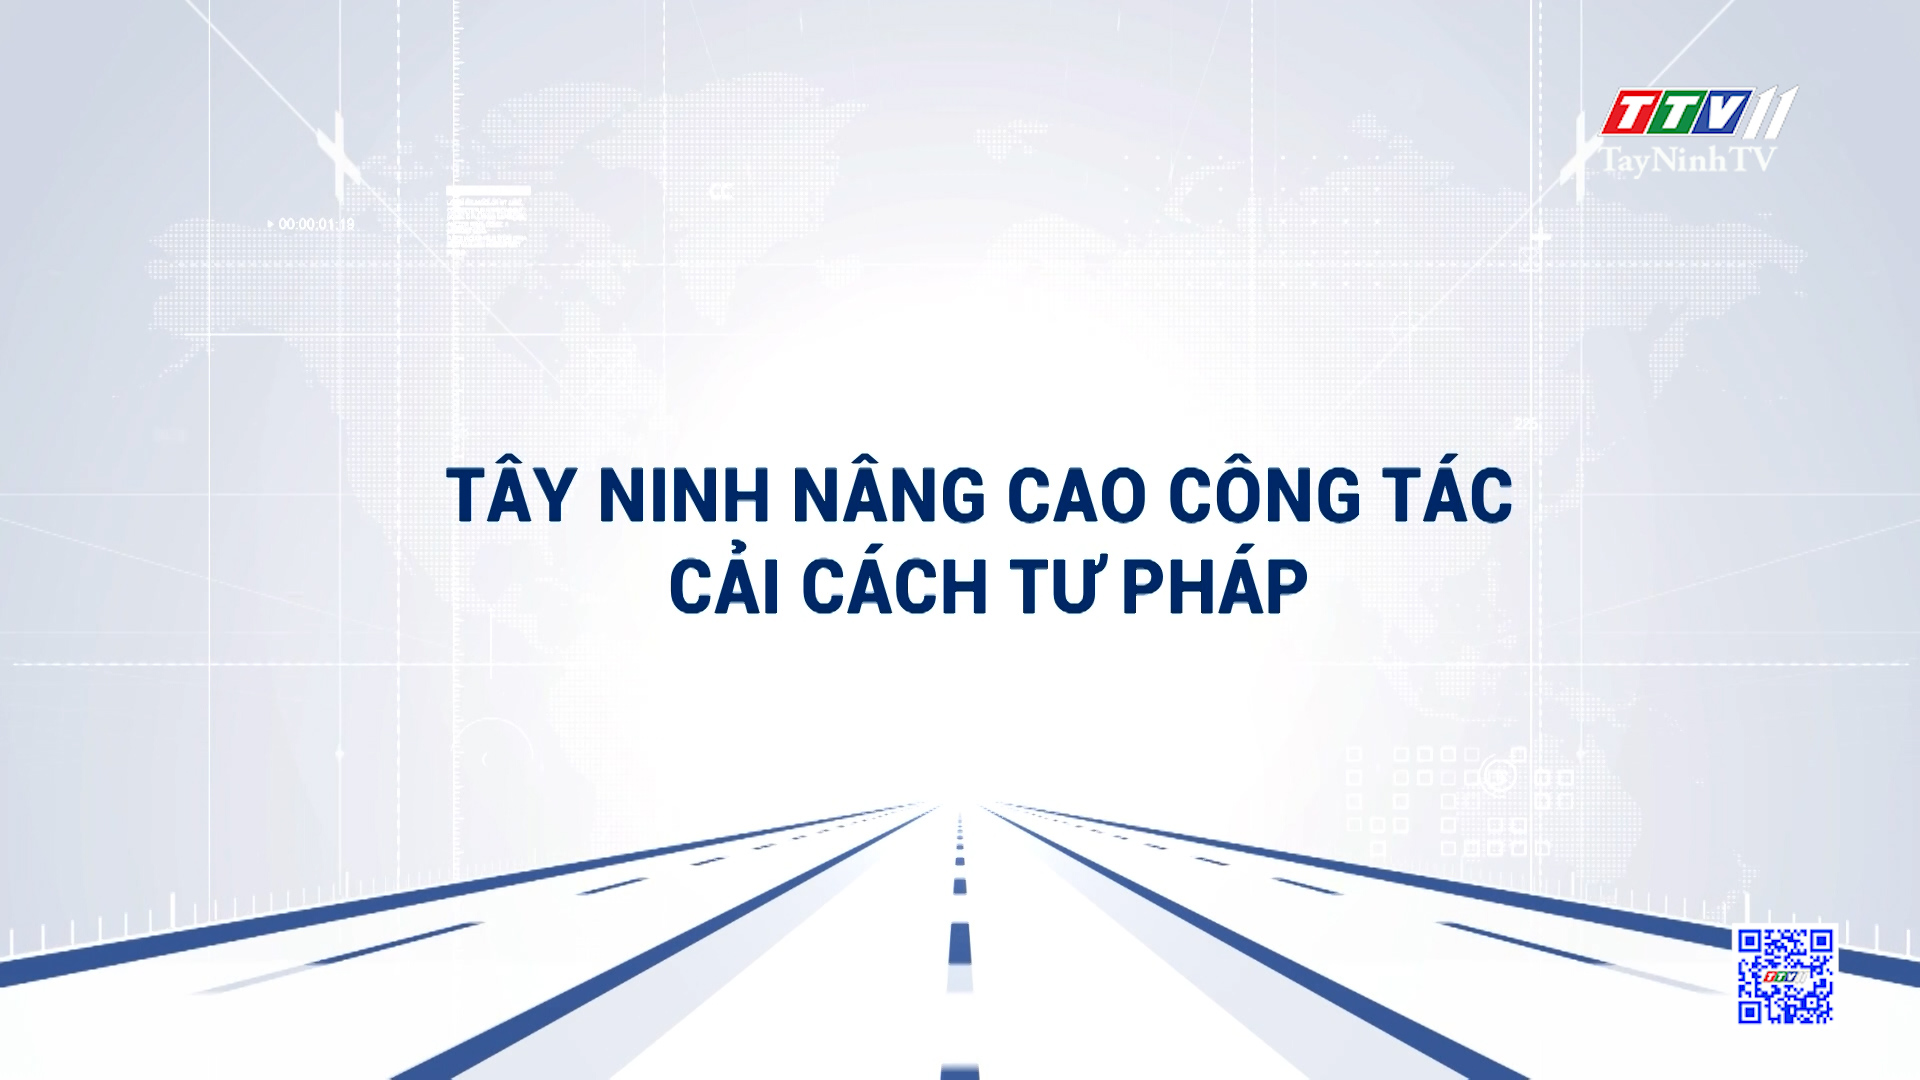 Tây Ninh nâng cao công tác cải cách tư pháp | Truyền thông chính sách | TayNinhTVDVC